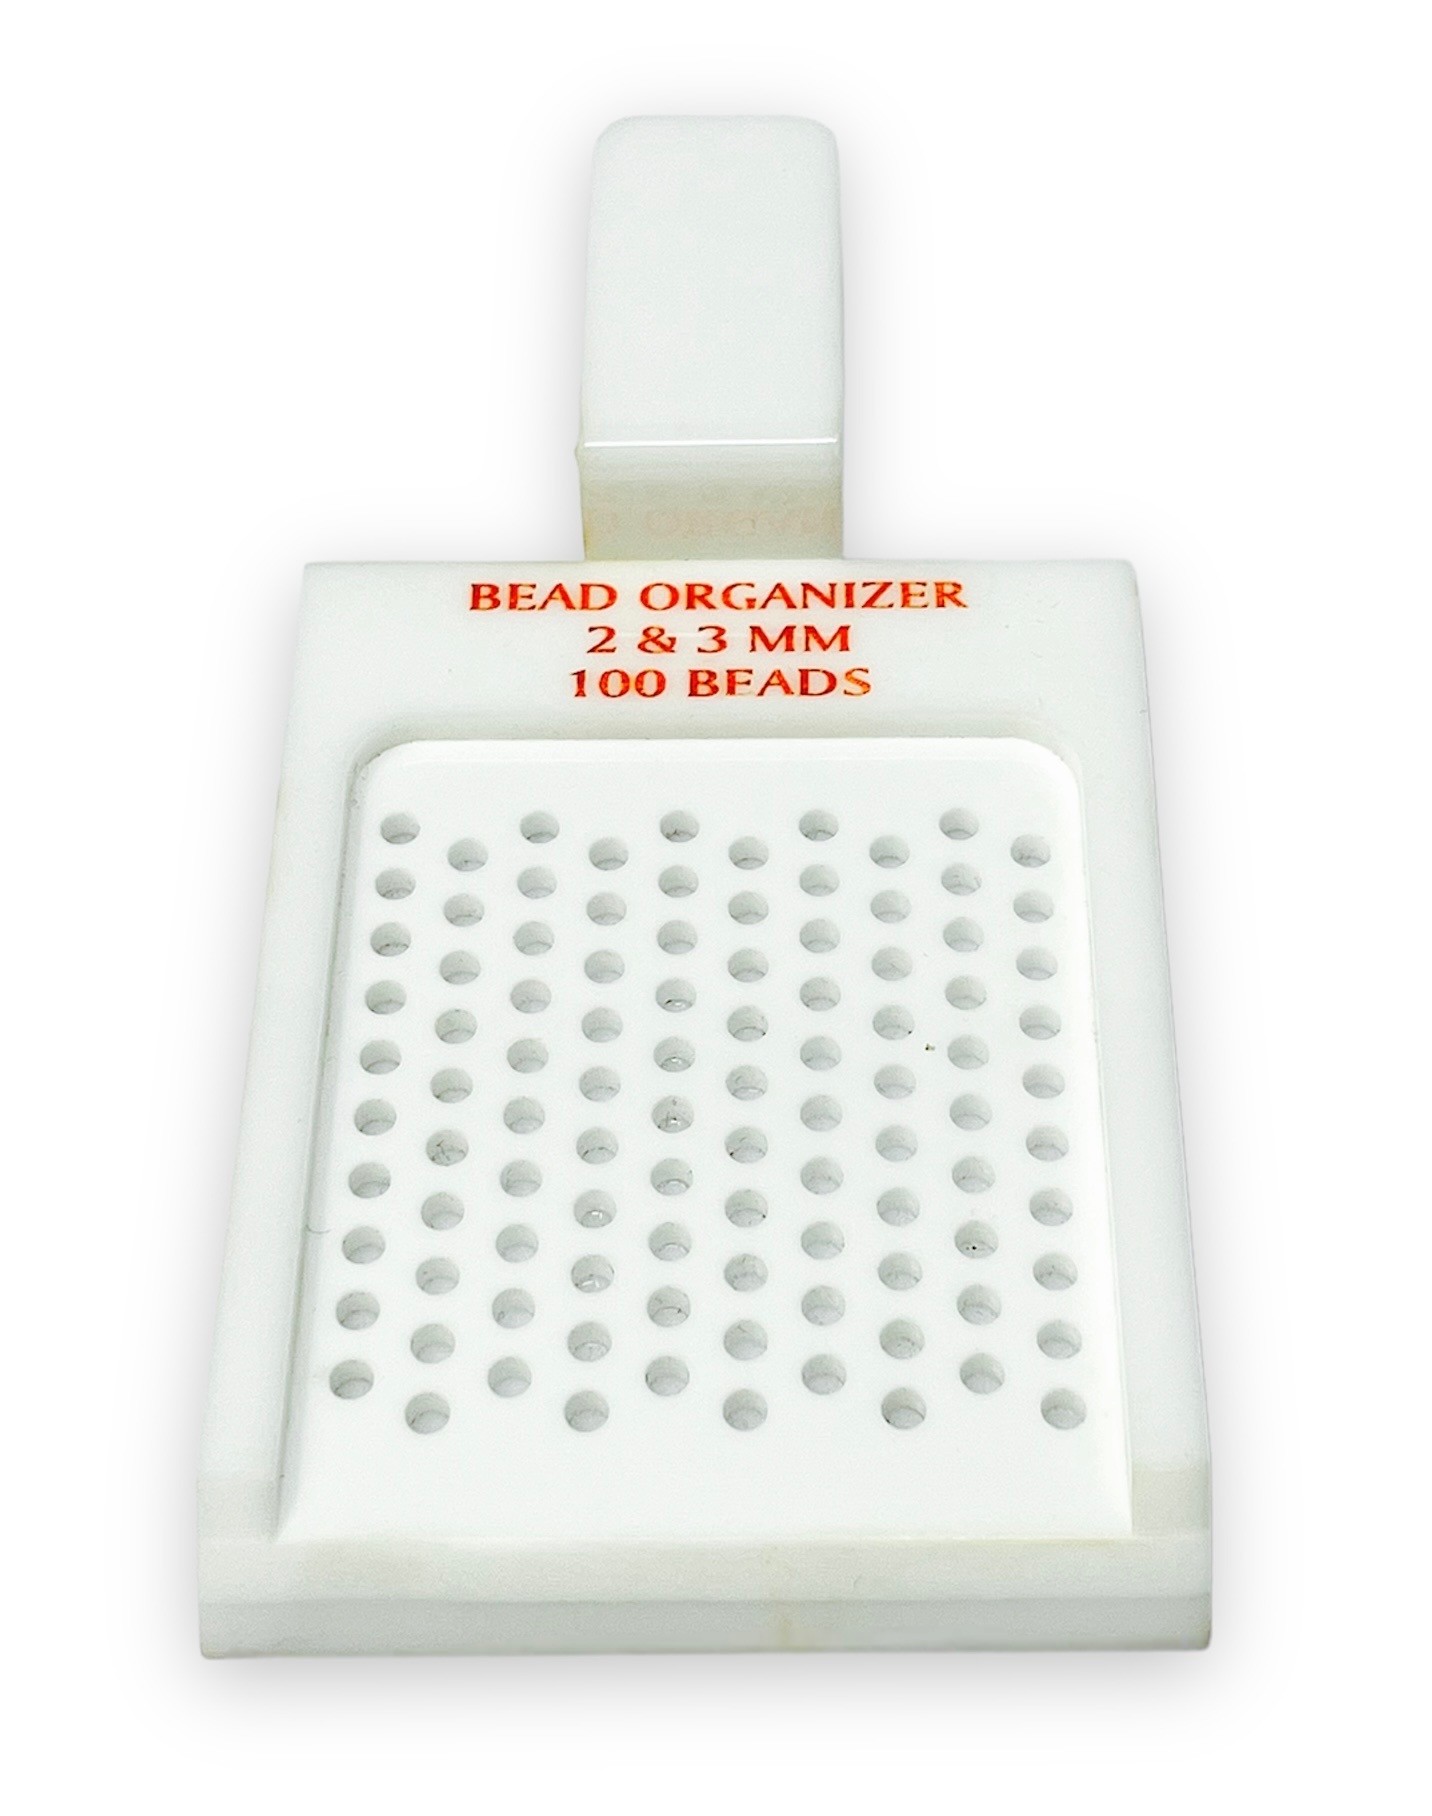 Bead Organizer Trays Acrylic (I) 2-3mm Capacity 100 Beads, BEAD